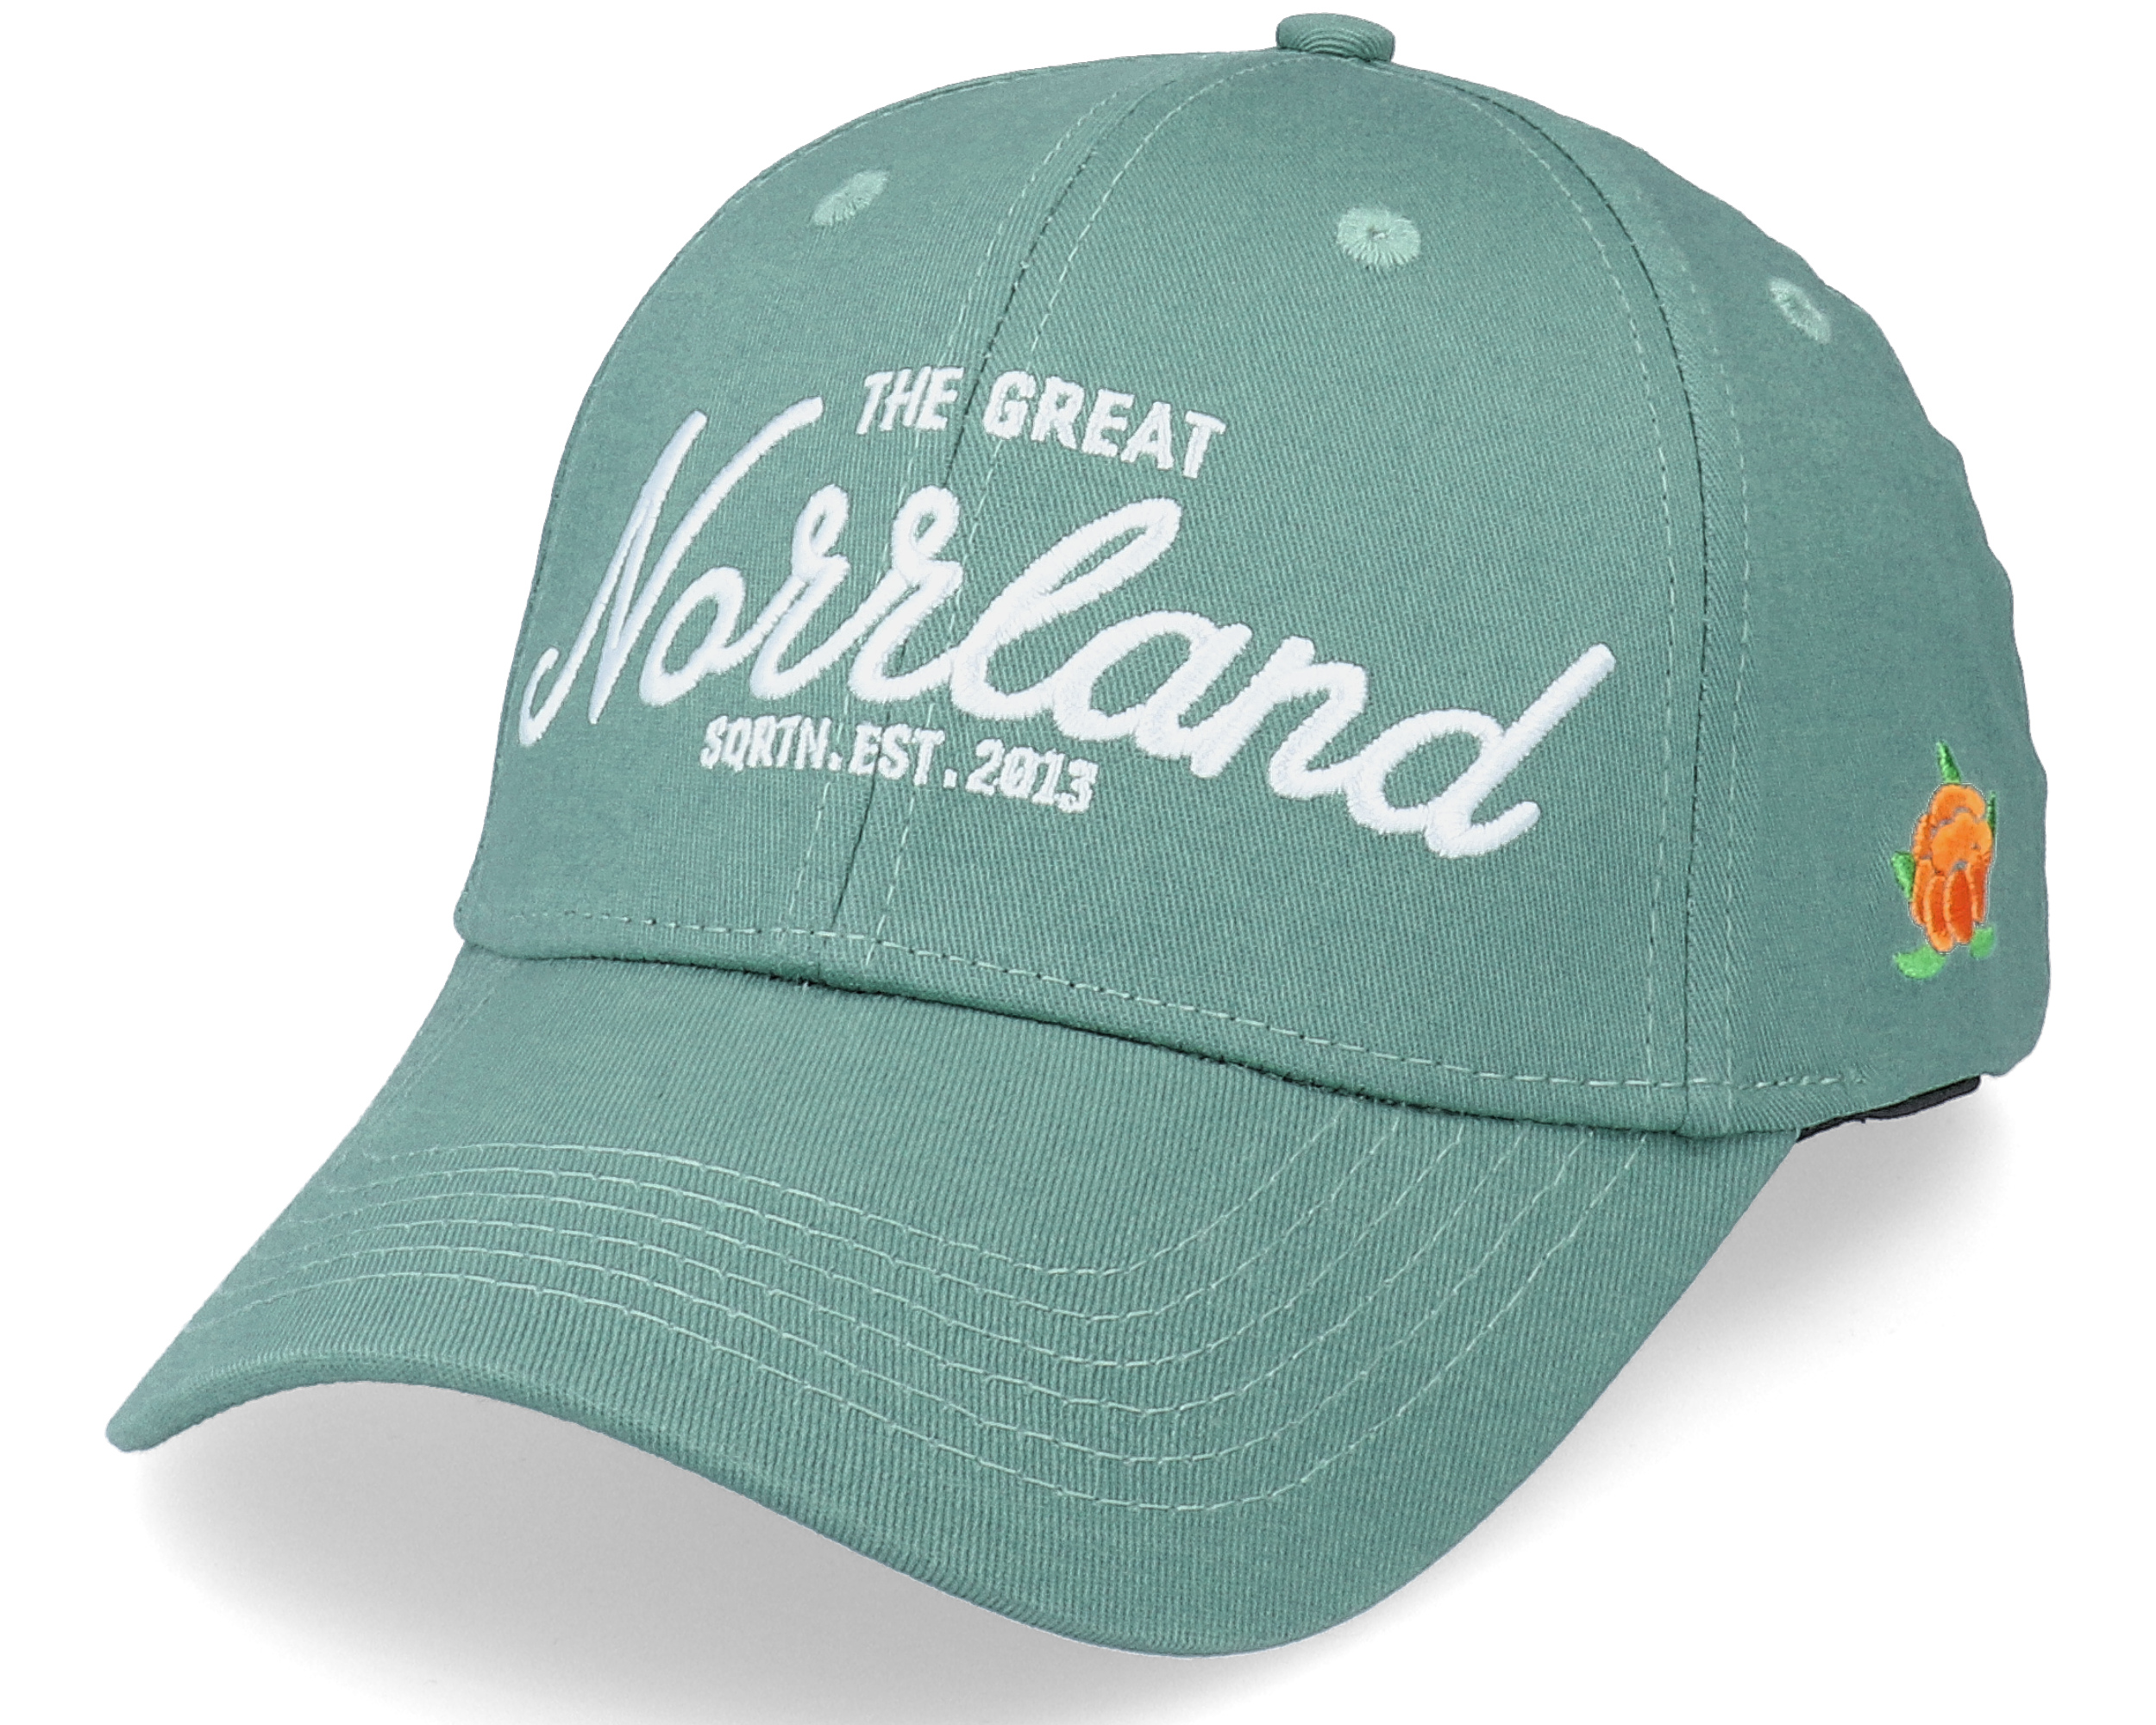 Great Norrland Hooked Cap Pale Green - SQRTN caps | Hatstore.co.uk